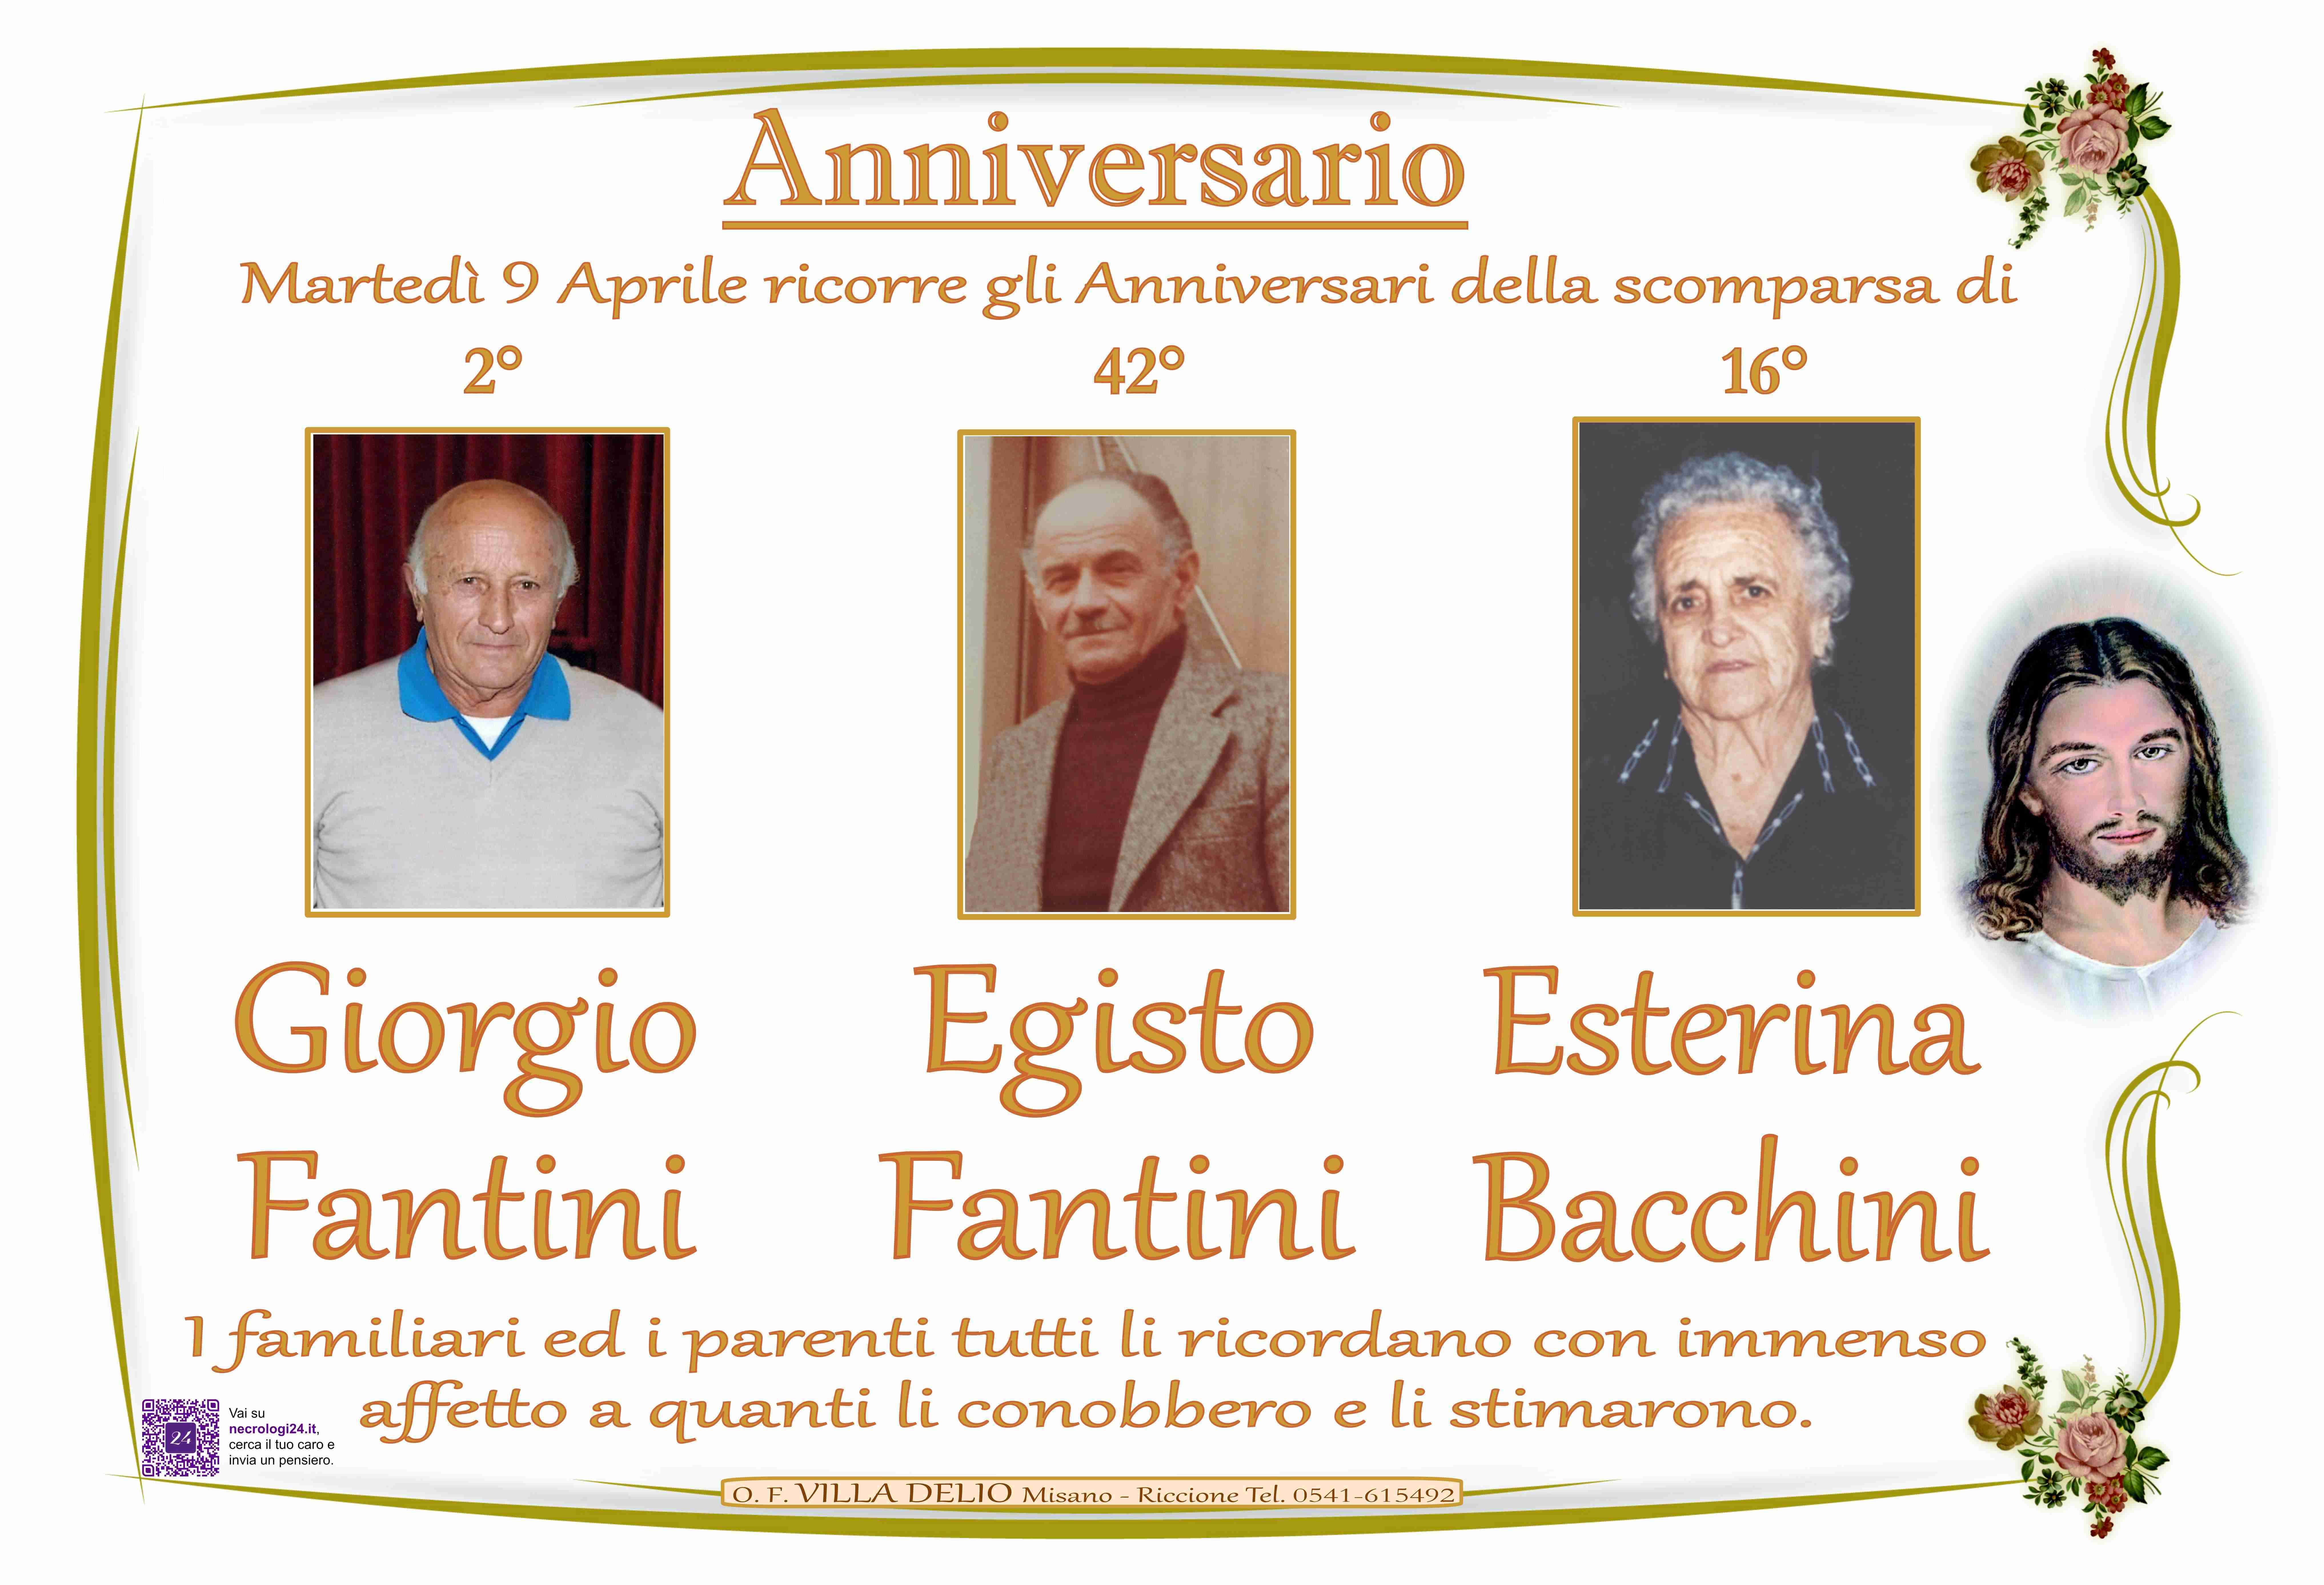 Giorgio Fantini, Egisto Fantini, Esterina Bacchini